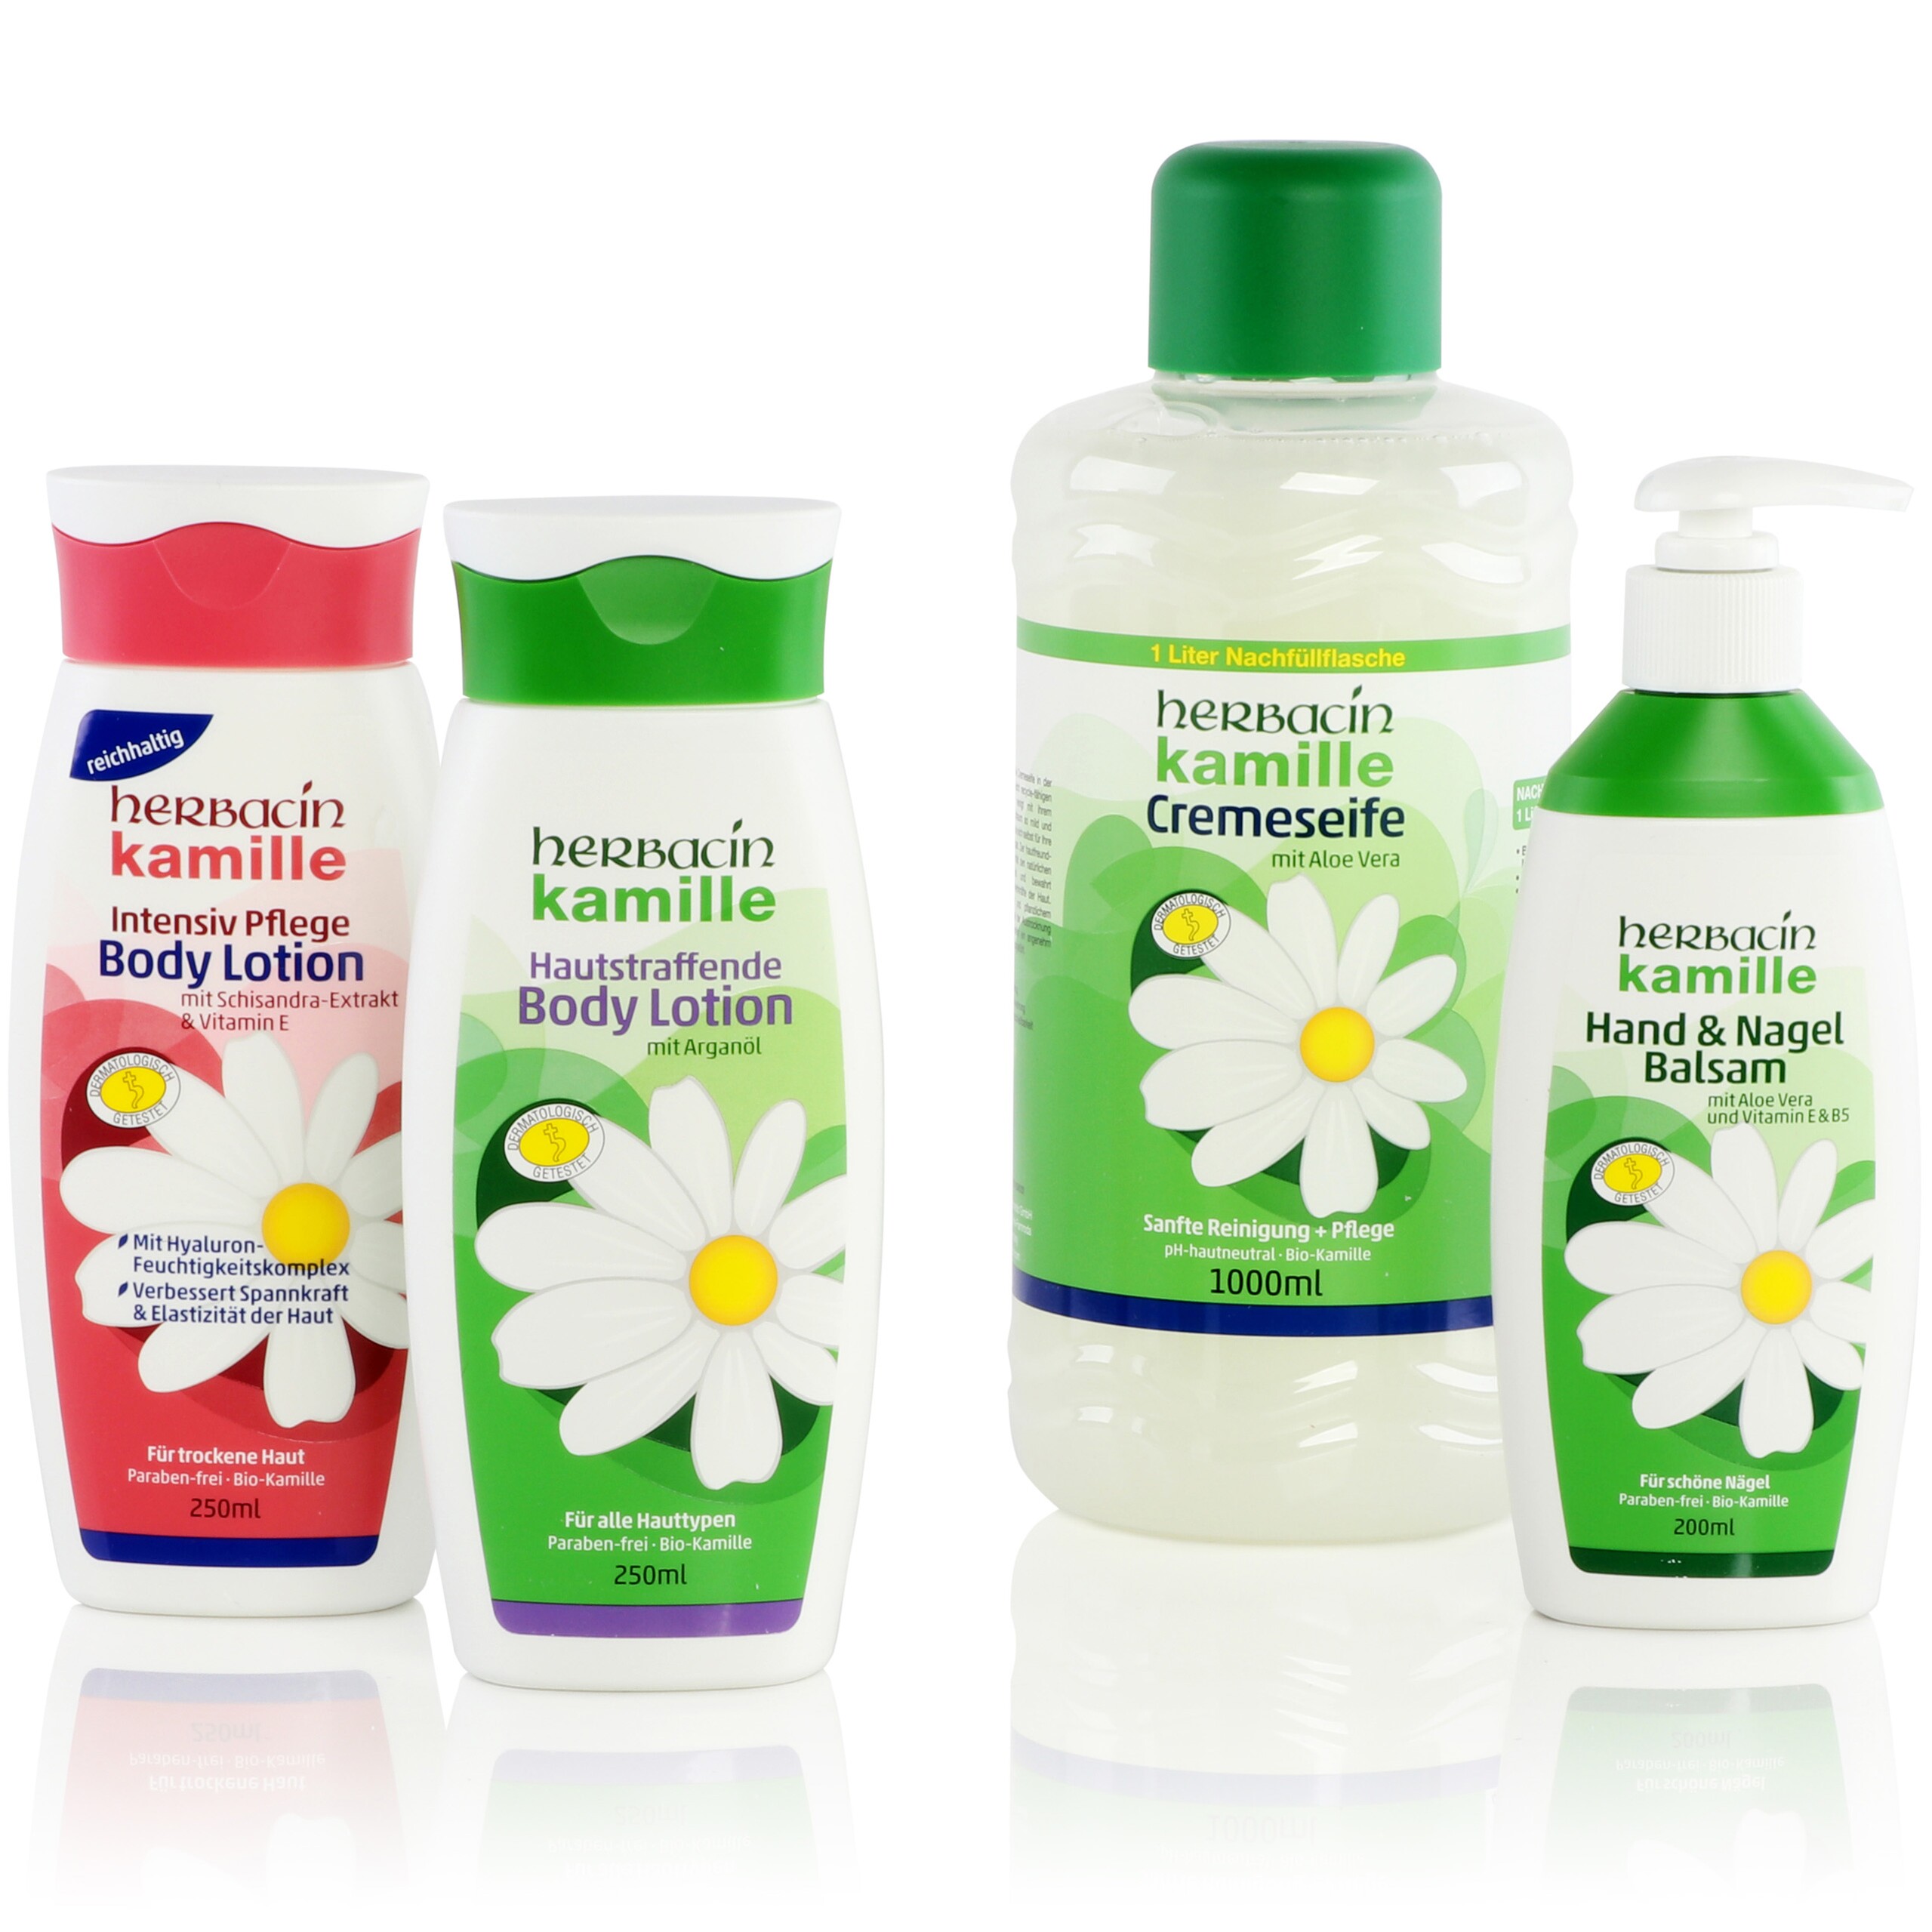 Quatre bouteilles de produits de soins corporels de la marque Herbacin, recouvertes d'étiquettes avec des éléments haptiques.